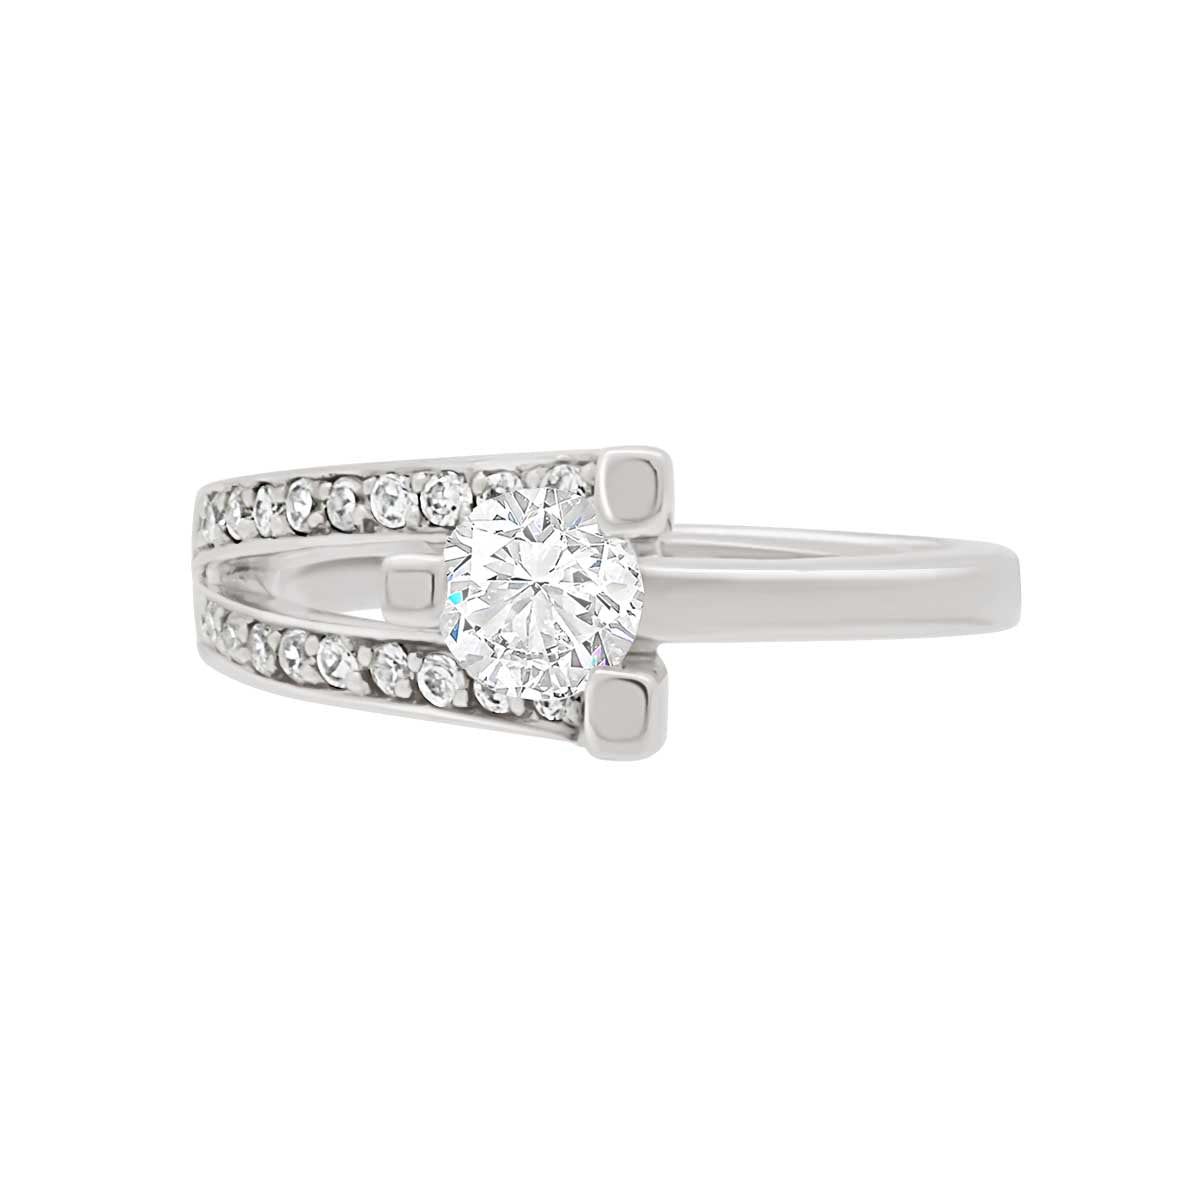 Unusual Diamond Engagement Ring Set in Platinum